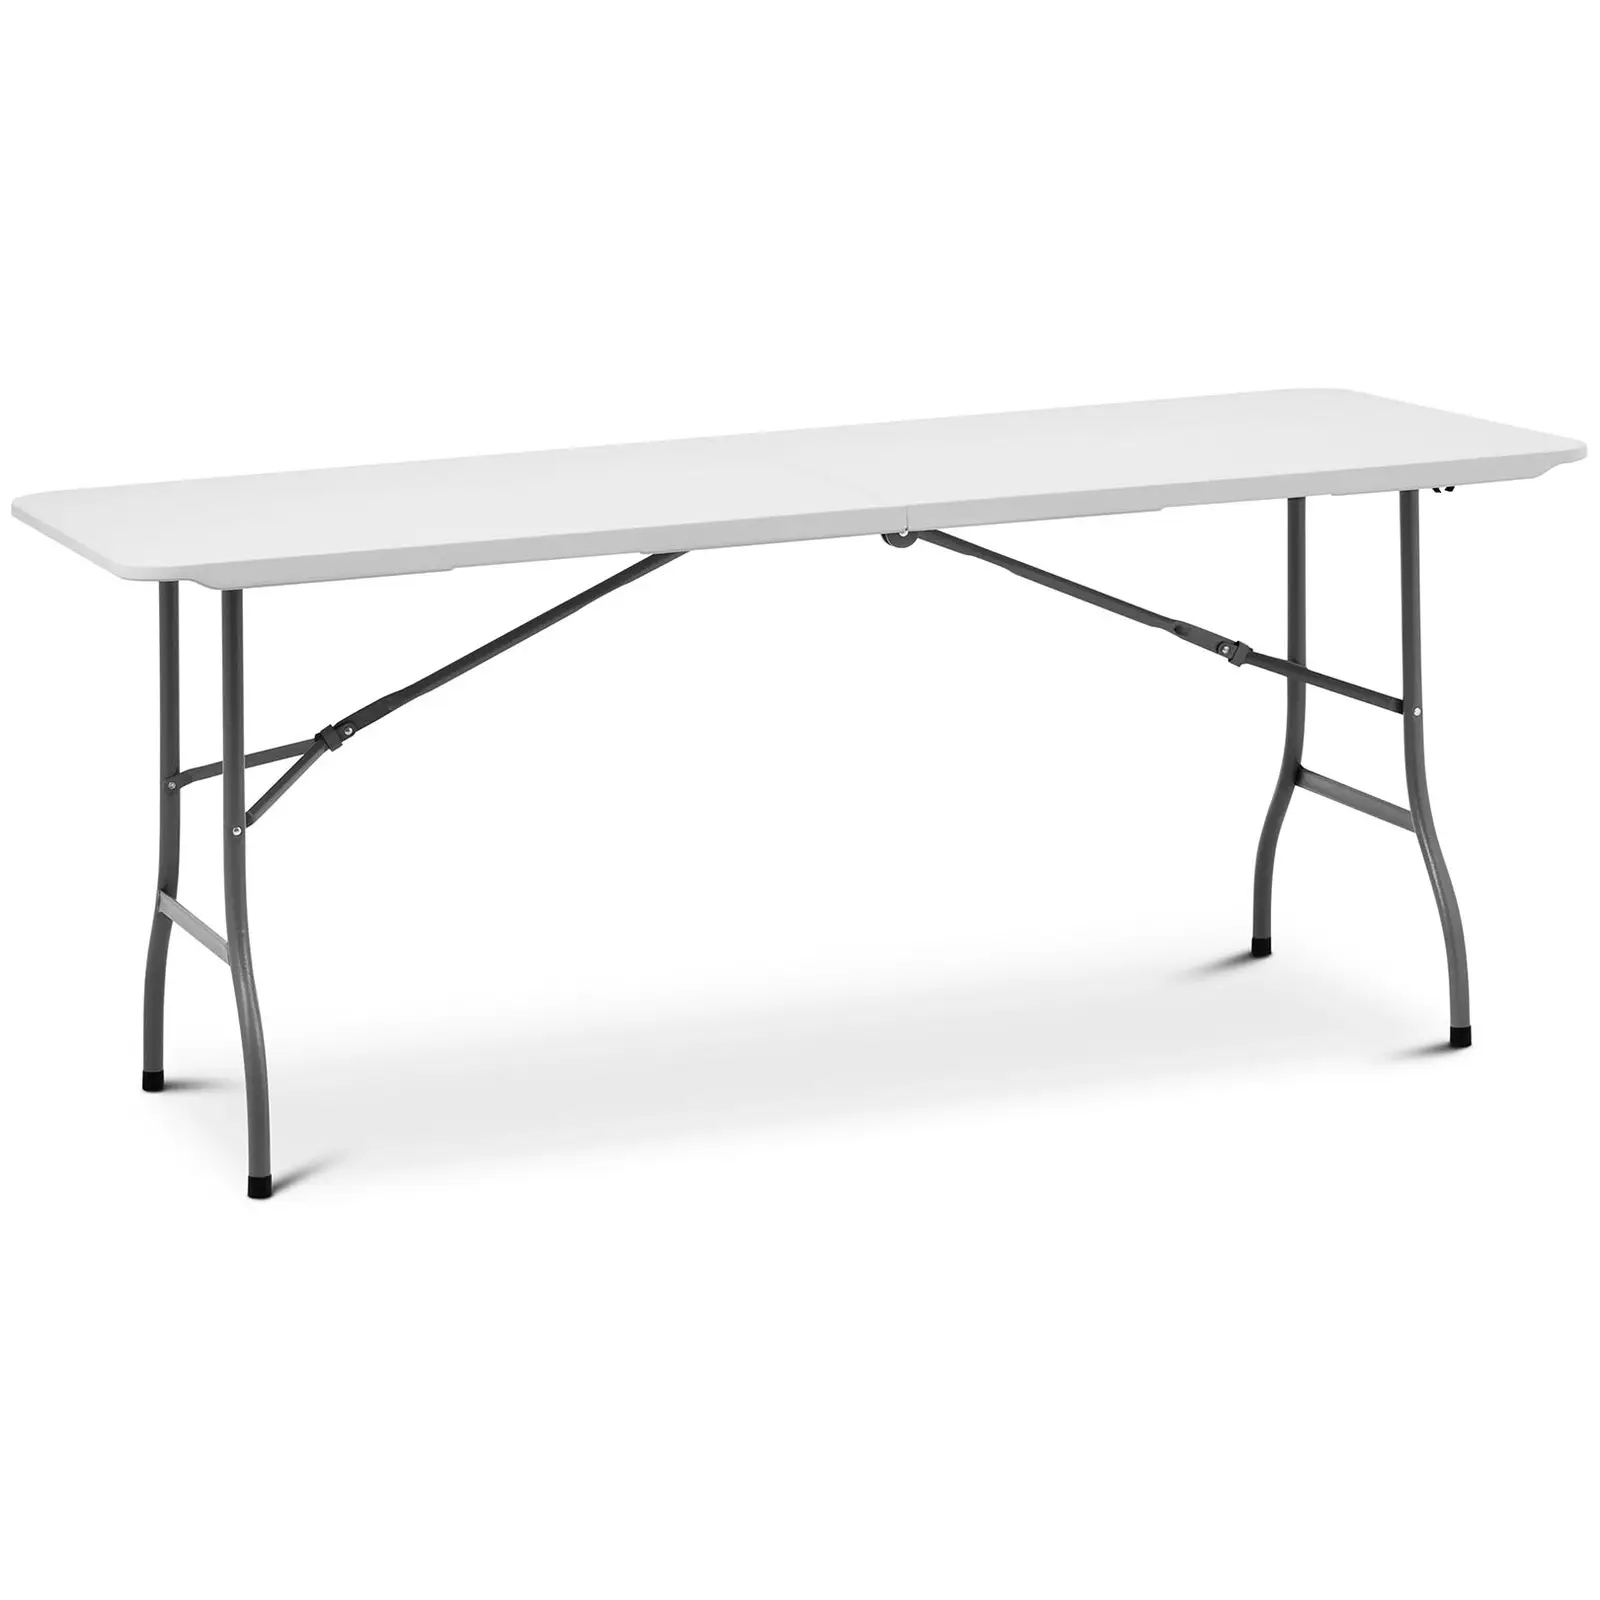 Összecsukható asztal - 1800 x 750 x 740 mm - Royal Catering - 150 kg - kültéri/beltéri - White